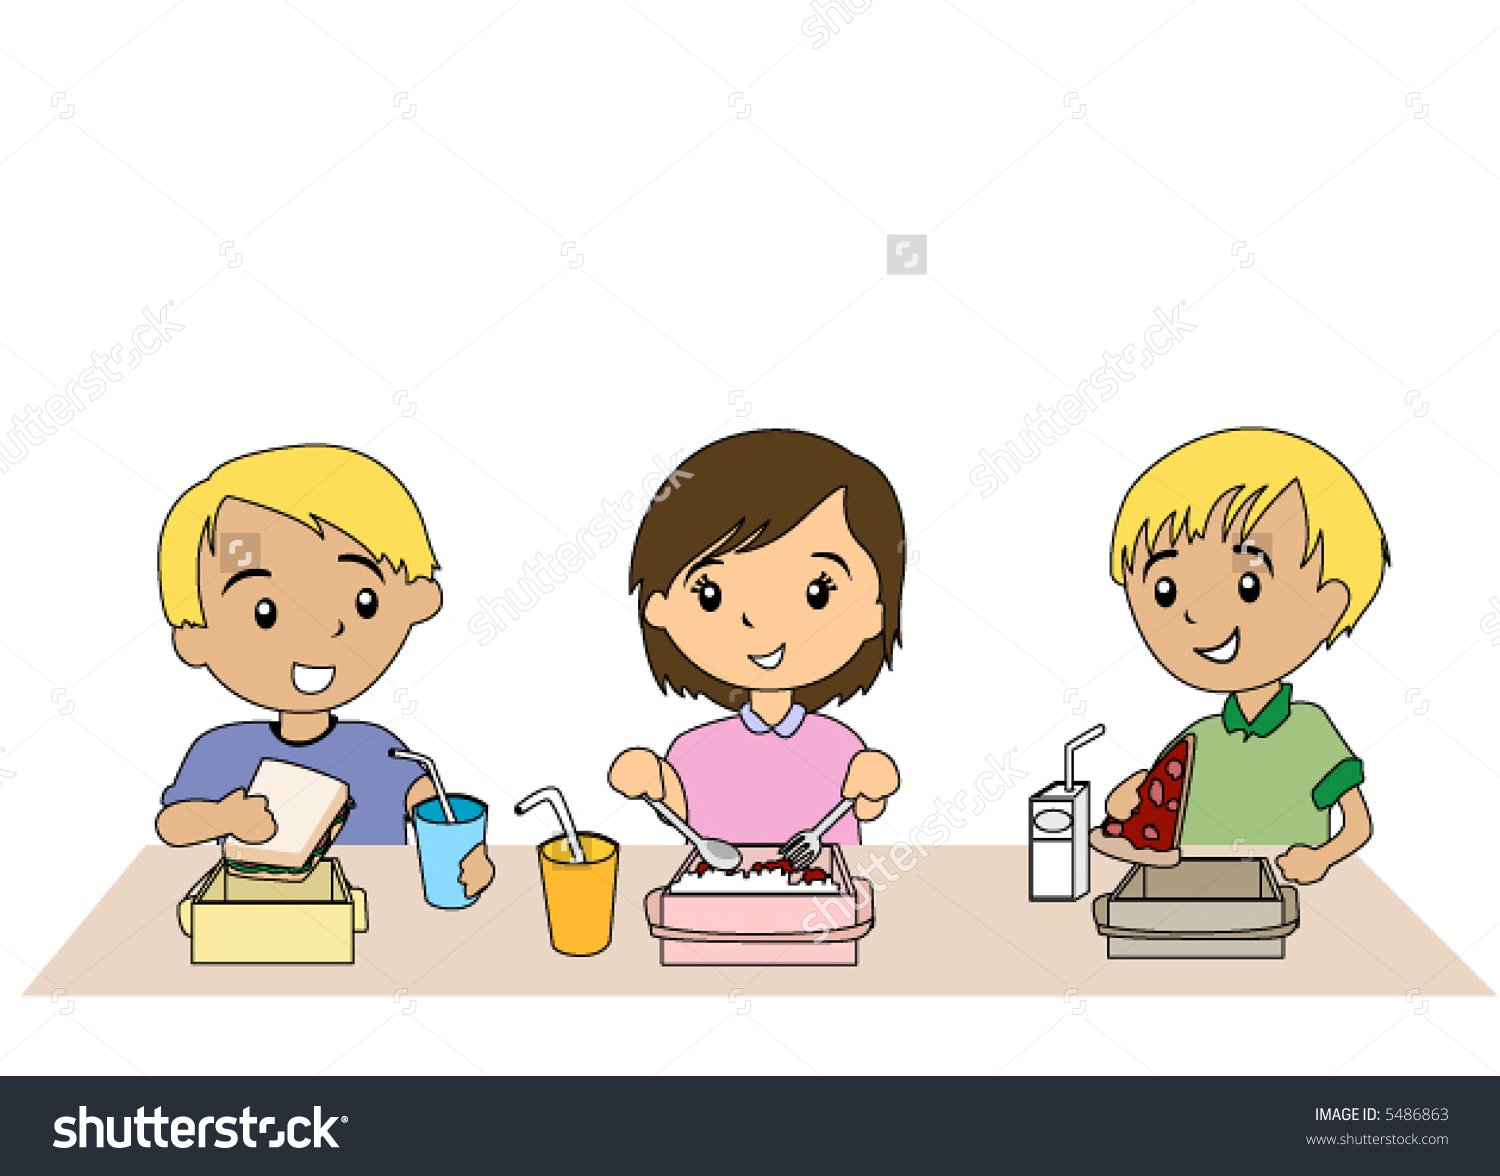 Картинка столовая для детей. Дети едят в столовой иллюстрация. Рисунок за столом в школьном буфете. Дети за столом картинки для детей. Обед в школе.